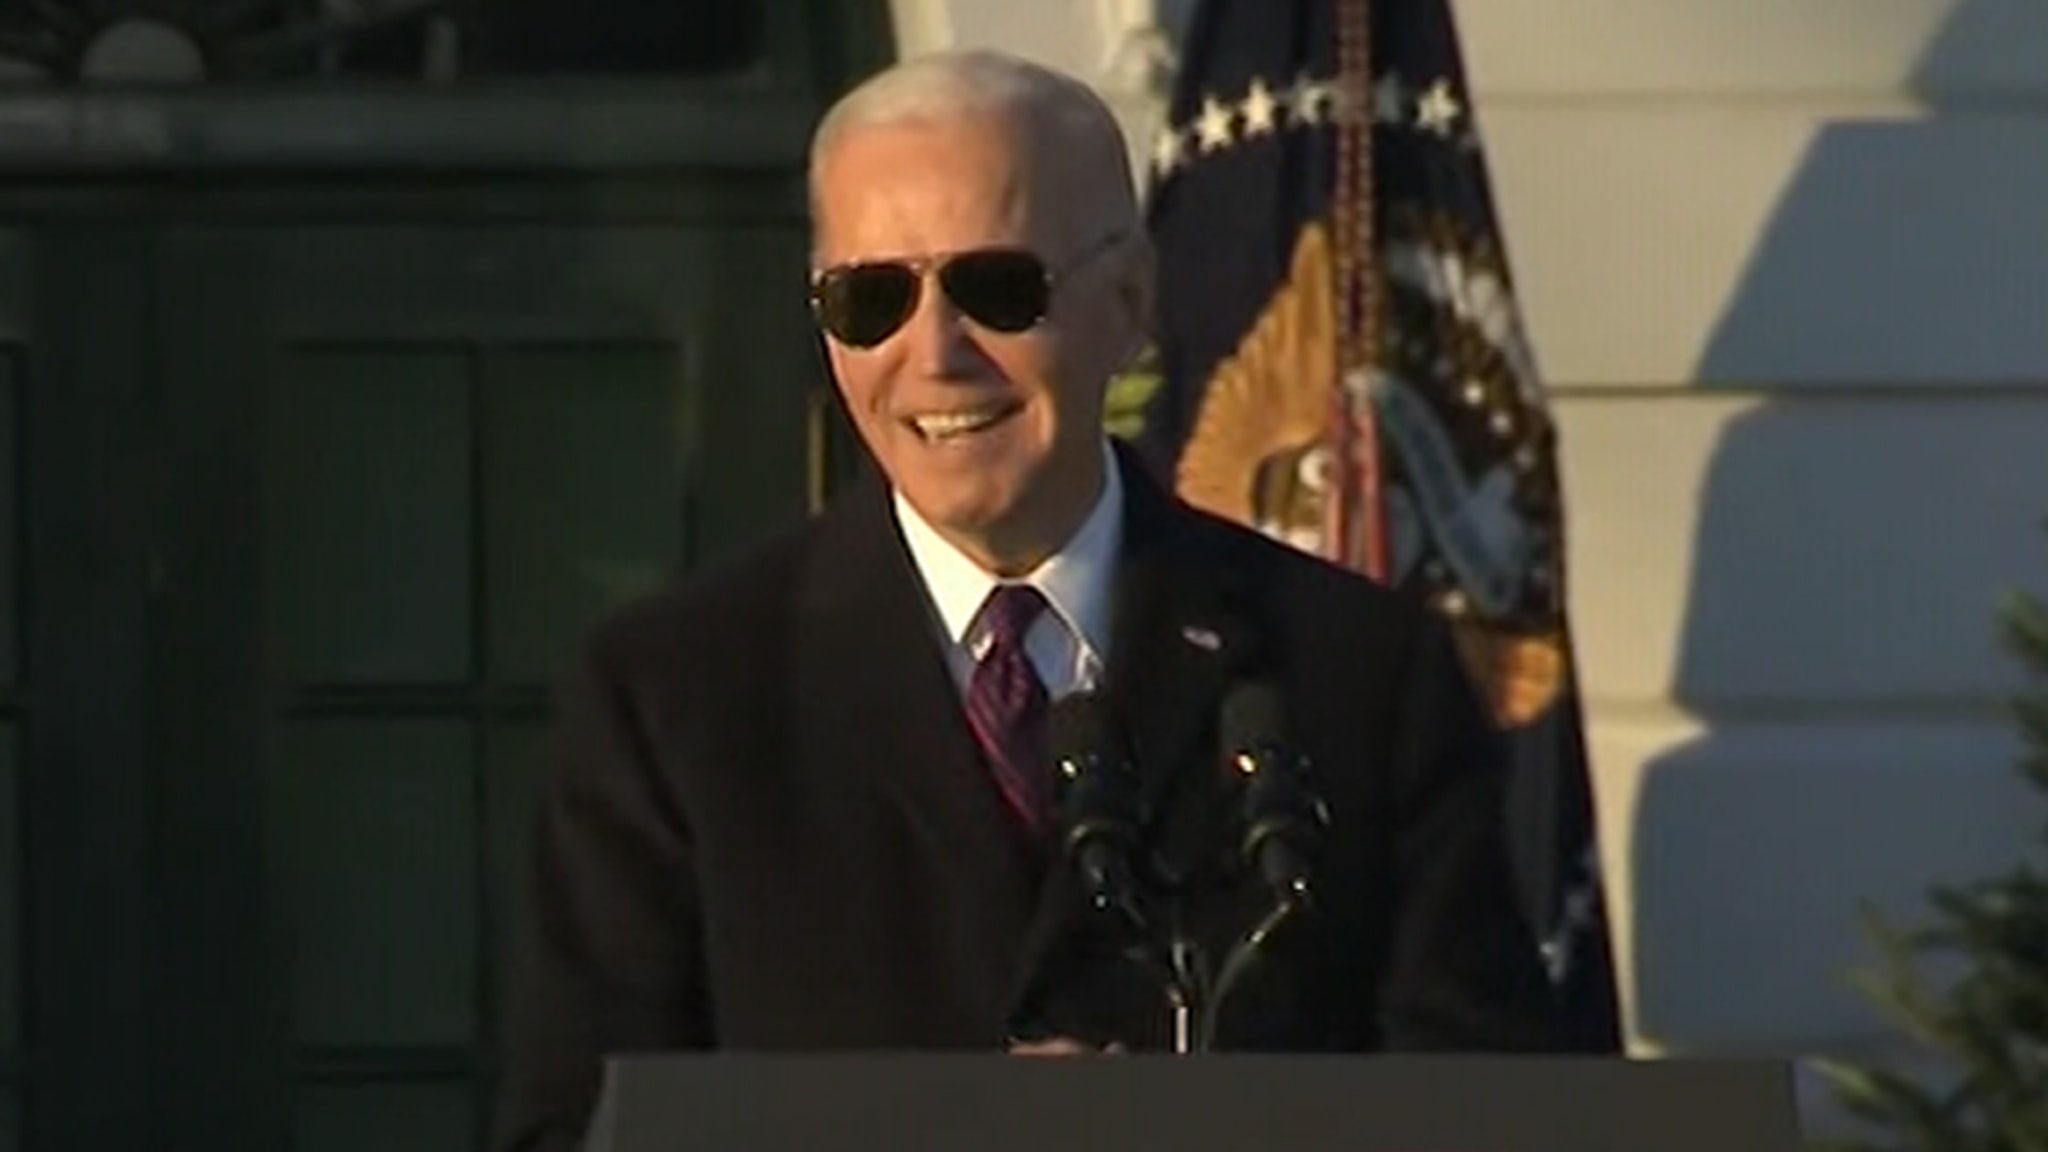 El presidente Biden firma la ley de matrimonio entre personas del mismo sexo, Sam Smith y Cyndi Lauper actúan